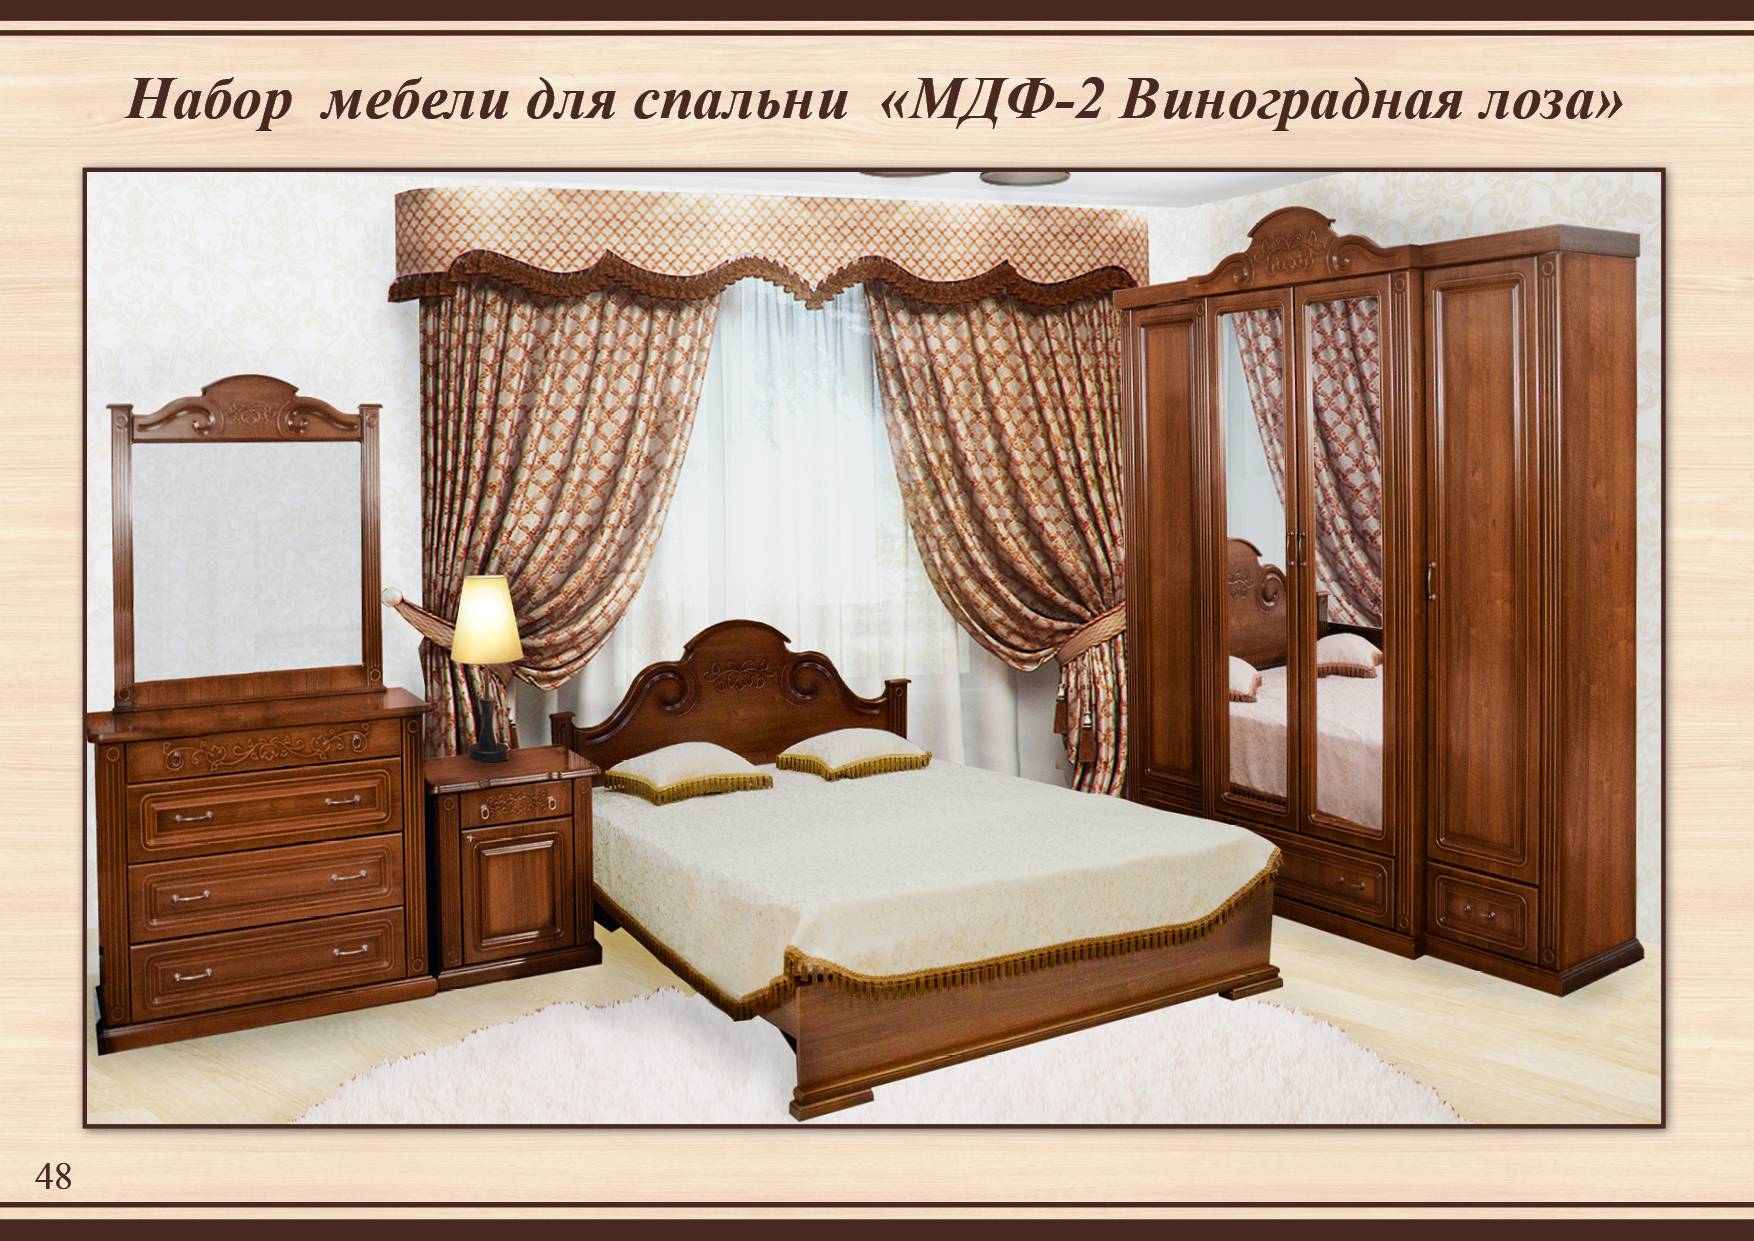 Спальня из Тамбова МДФ 2с виноградная лоза:шкаф,кровать,комод,зеркало,тумбочки